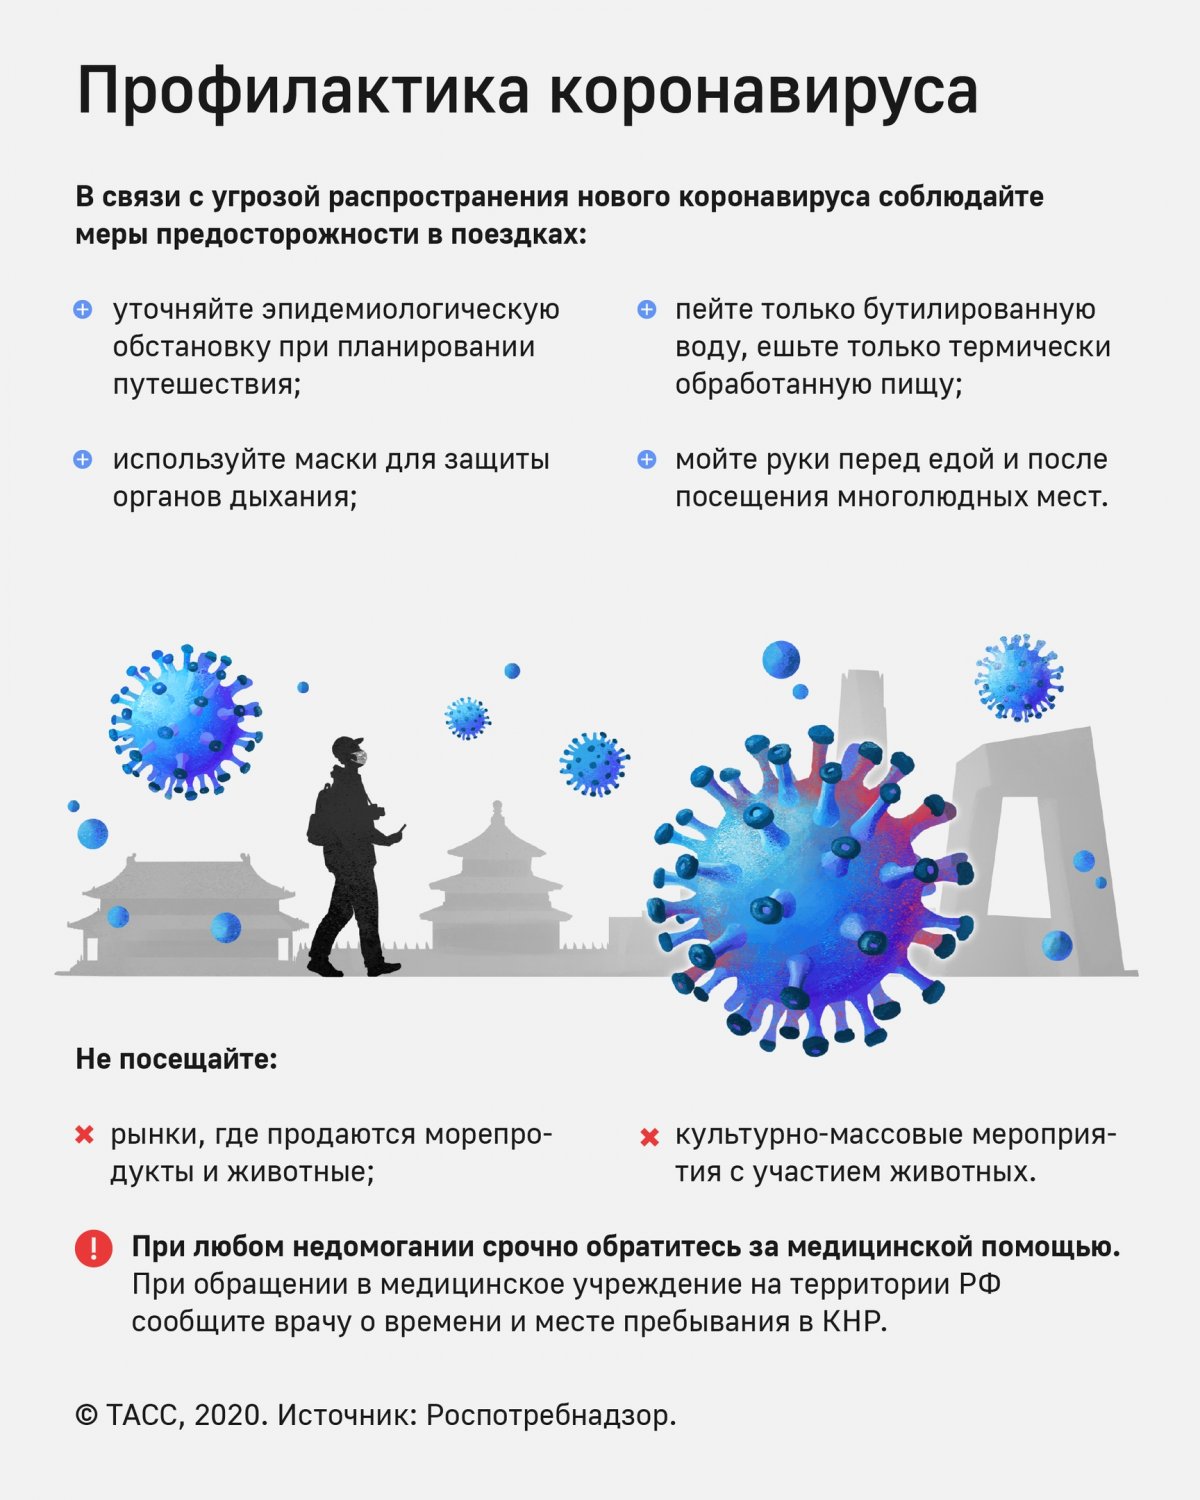 Профилактика - это просто. Как защититься от гриппа, ОРВИ, в том числе коронавирусной инфекции COVID-19